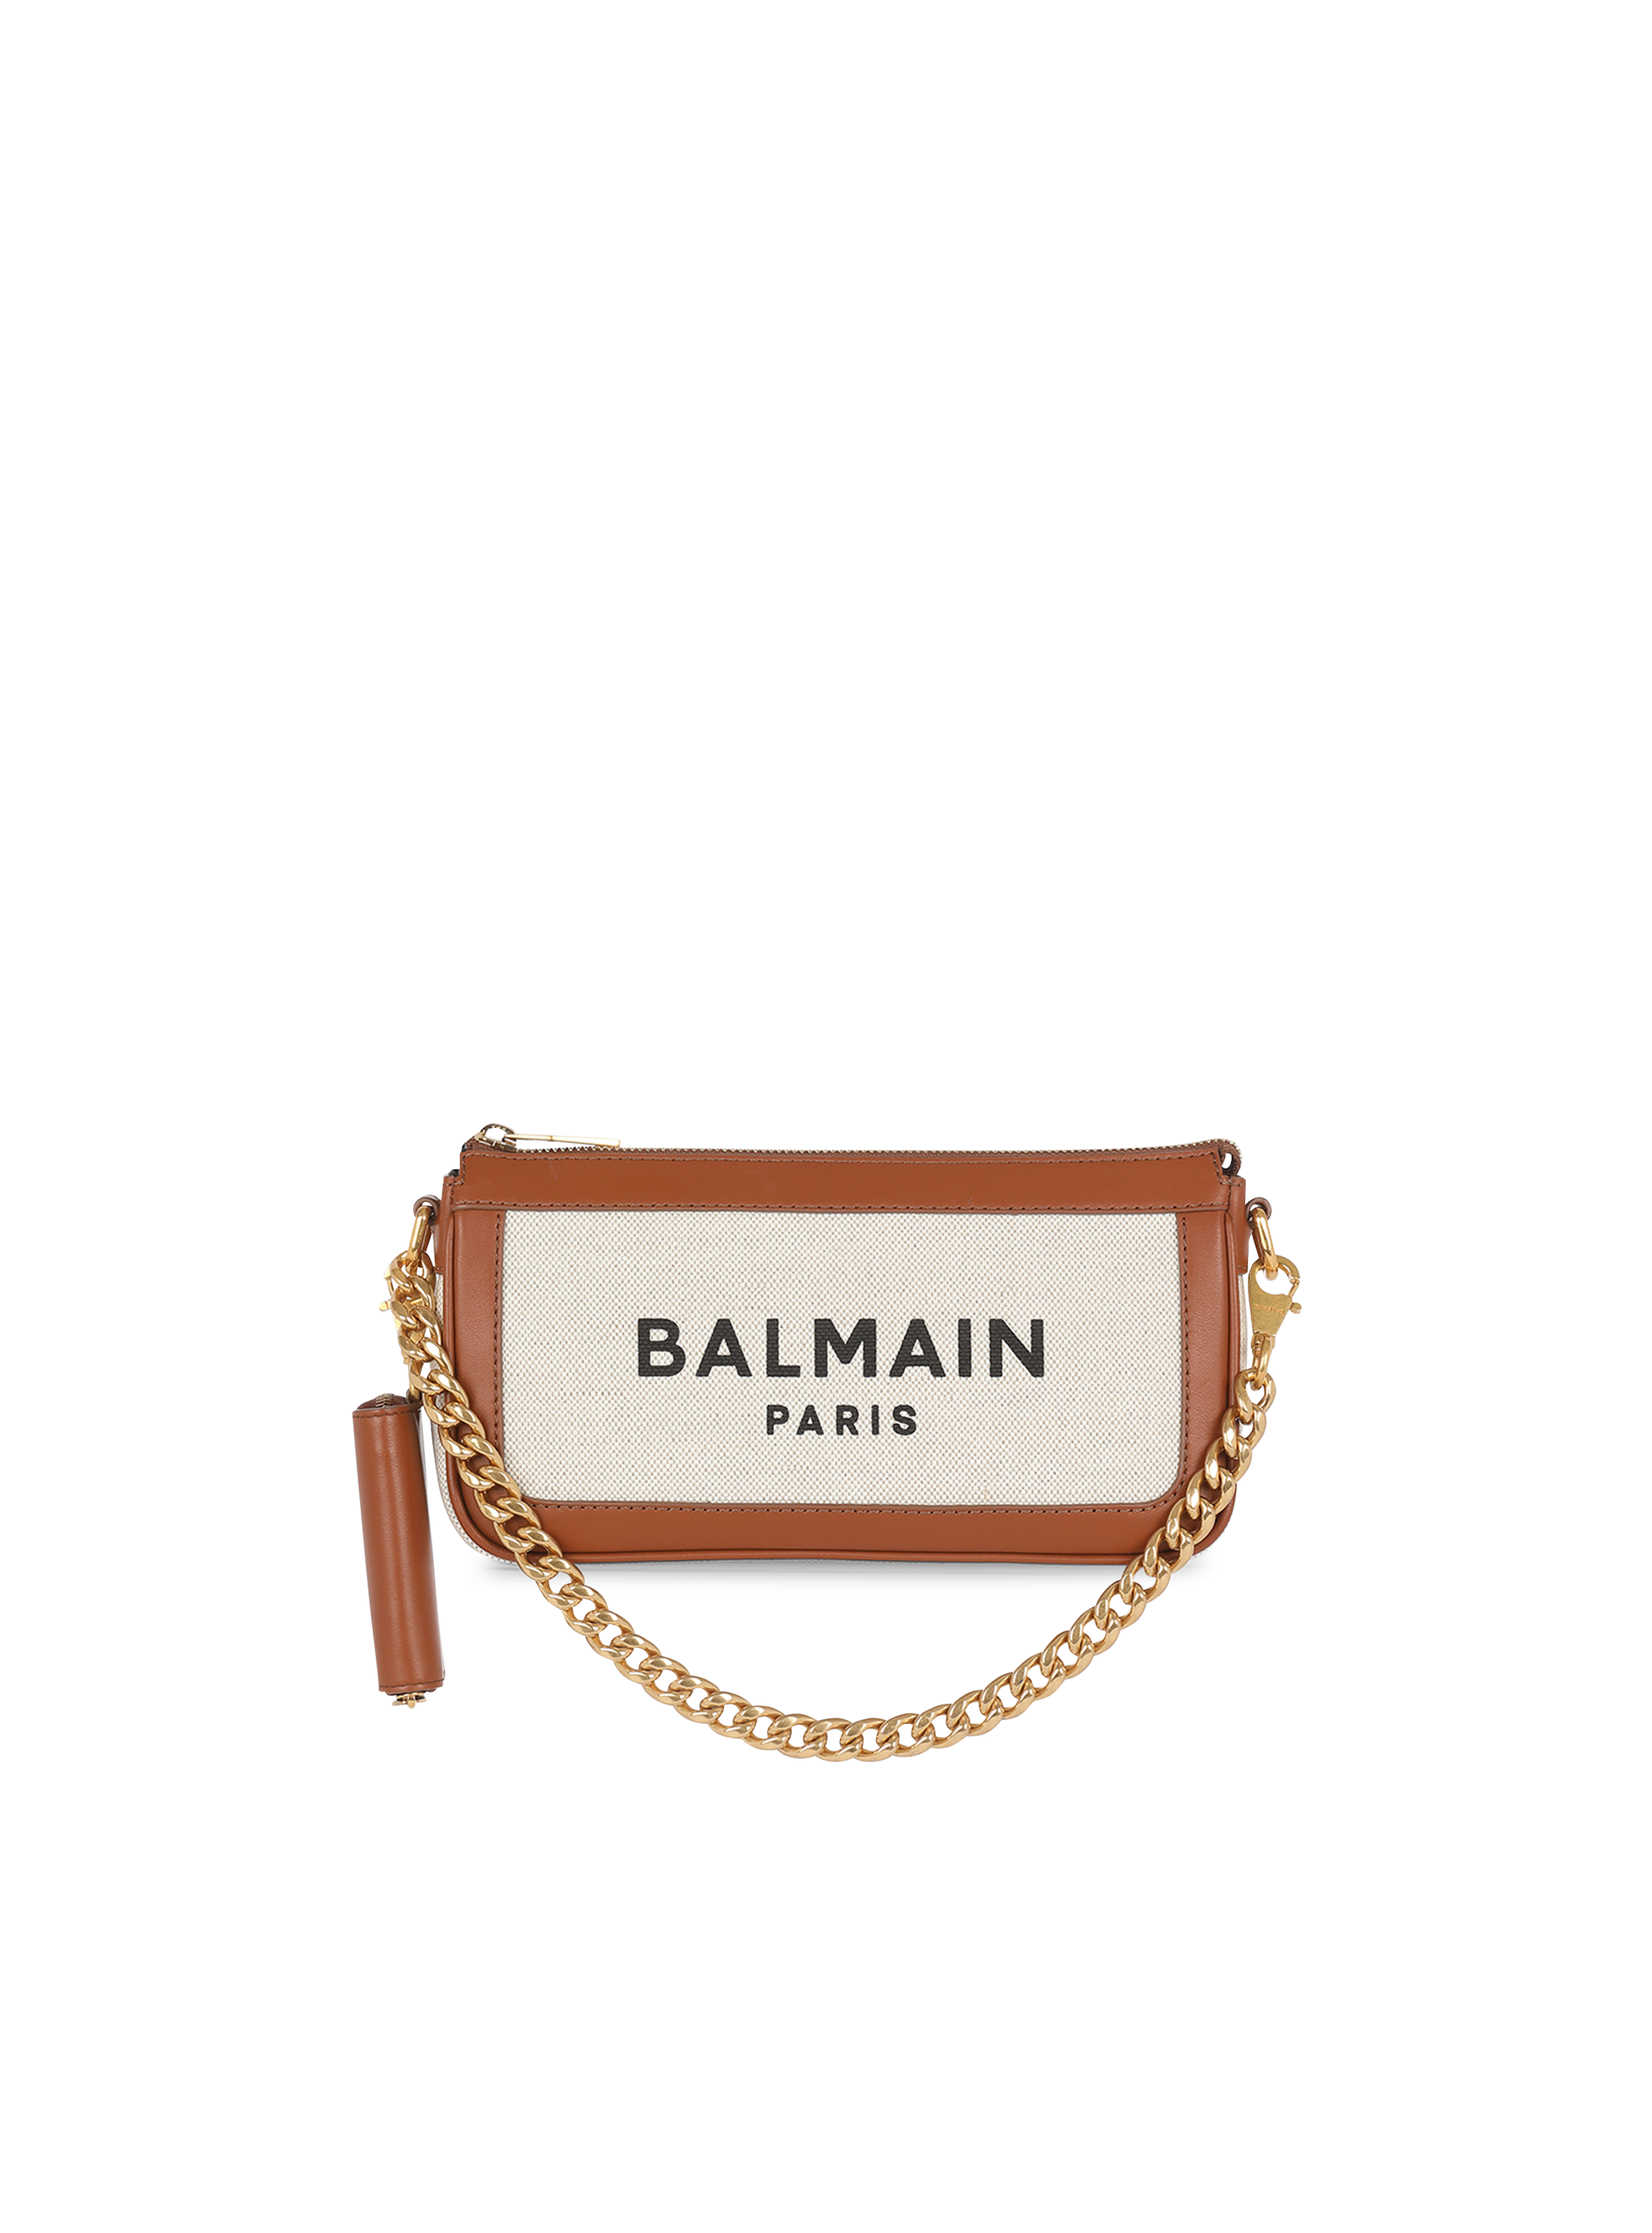 B-Army バッグコレクション | BALMAIN